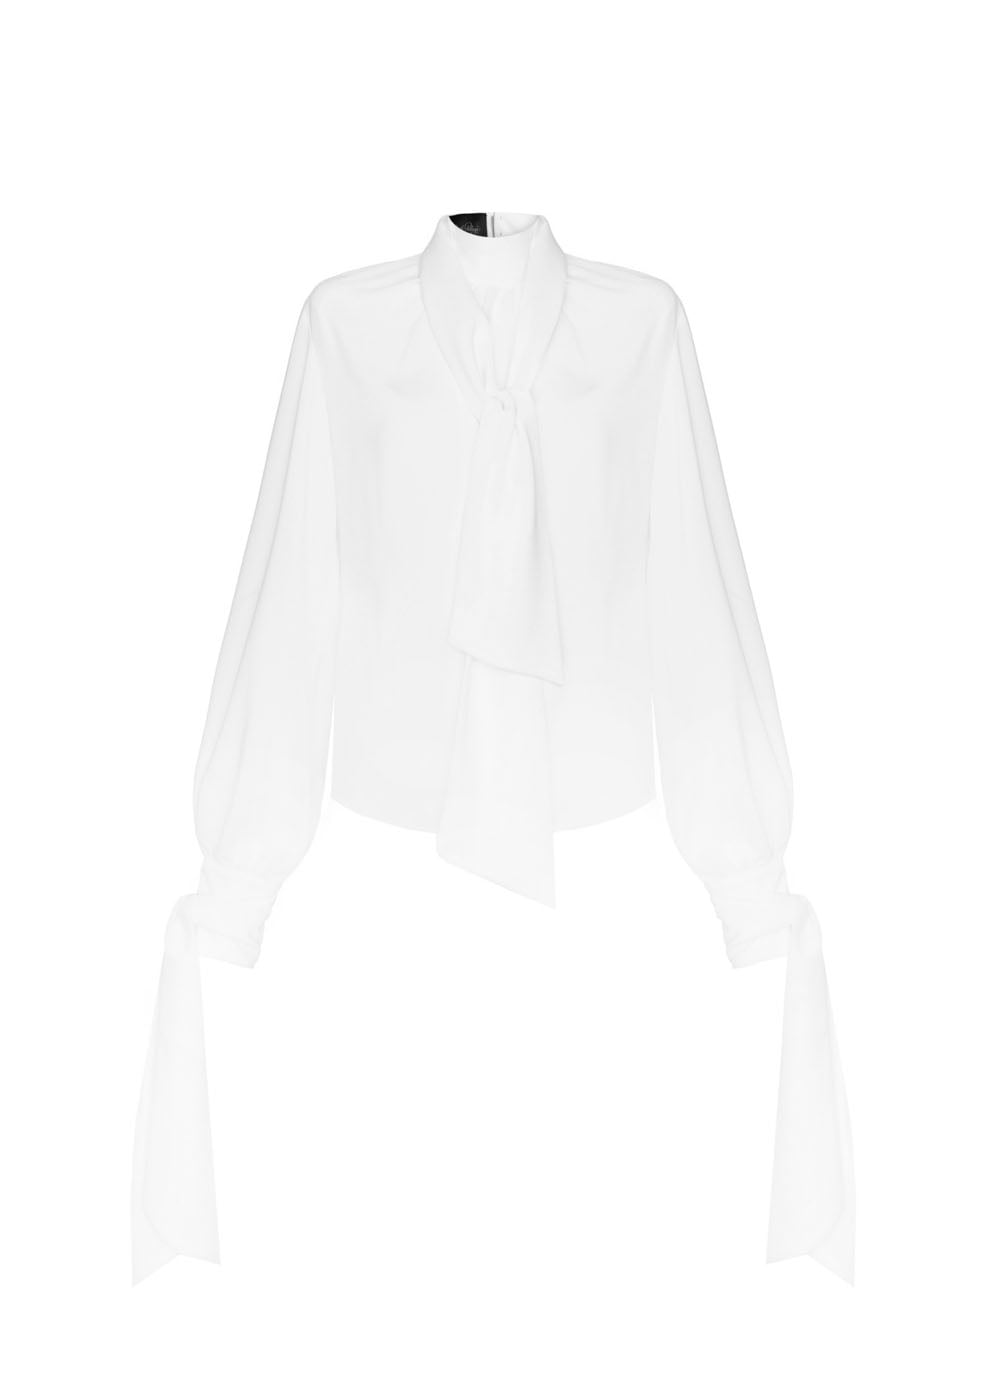 Koszula - bluzka biała z kokardami Off-white